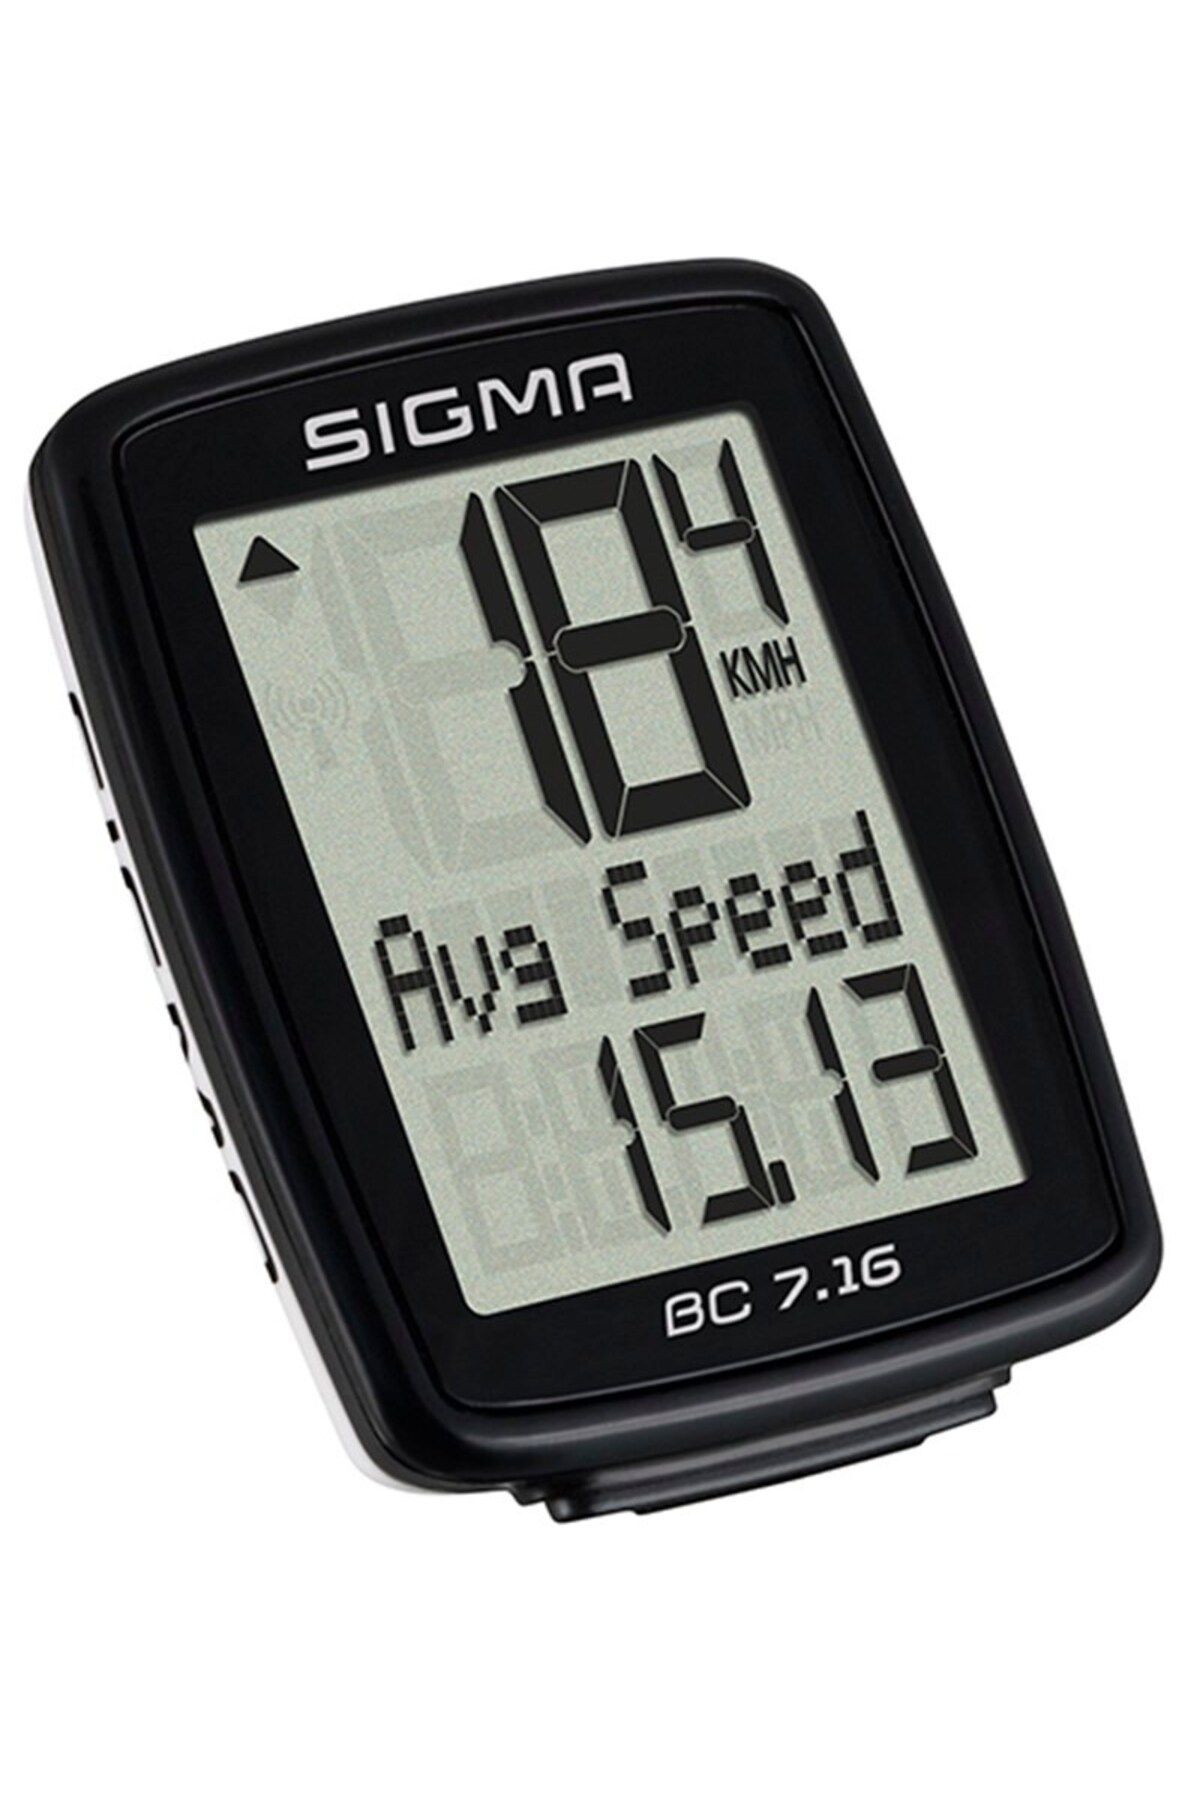 Sigma Kablolu Kilometre Saati Bc 7.16